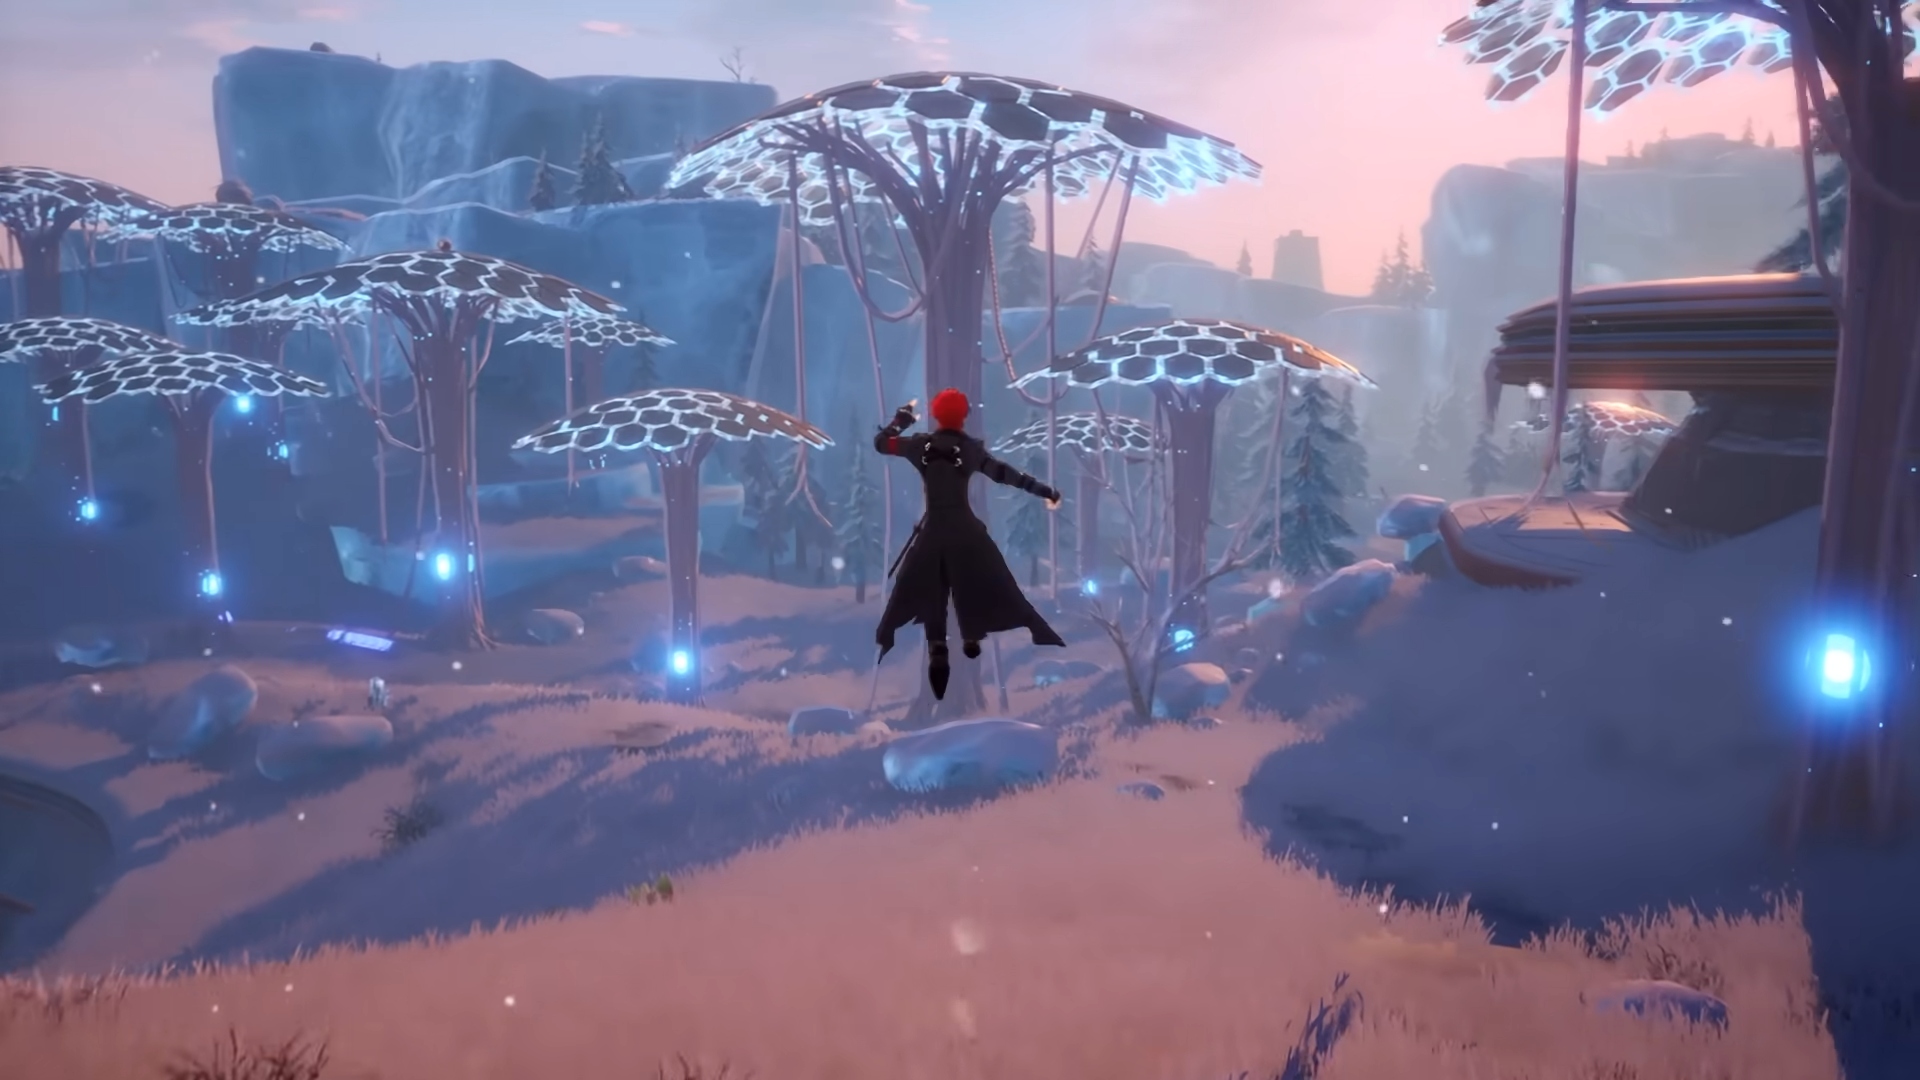 Los mejores juegos gratuitos para PC: Tower of Fantasy. La imagen muestra a un hombre con un abrigo negro saltando por el aire con algunos hongos delante de él.